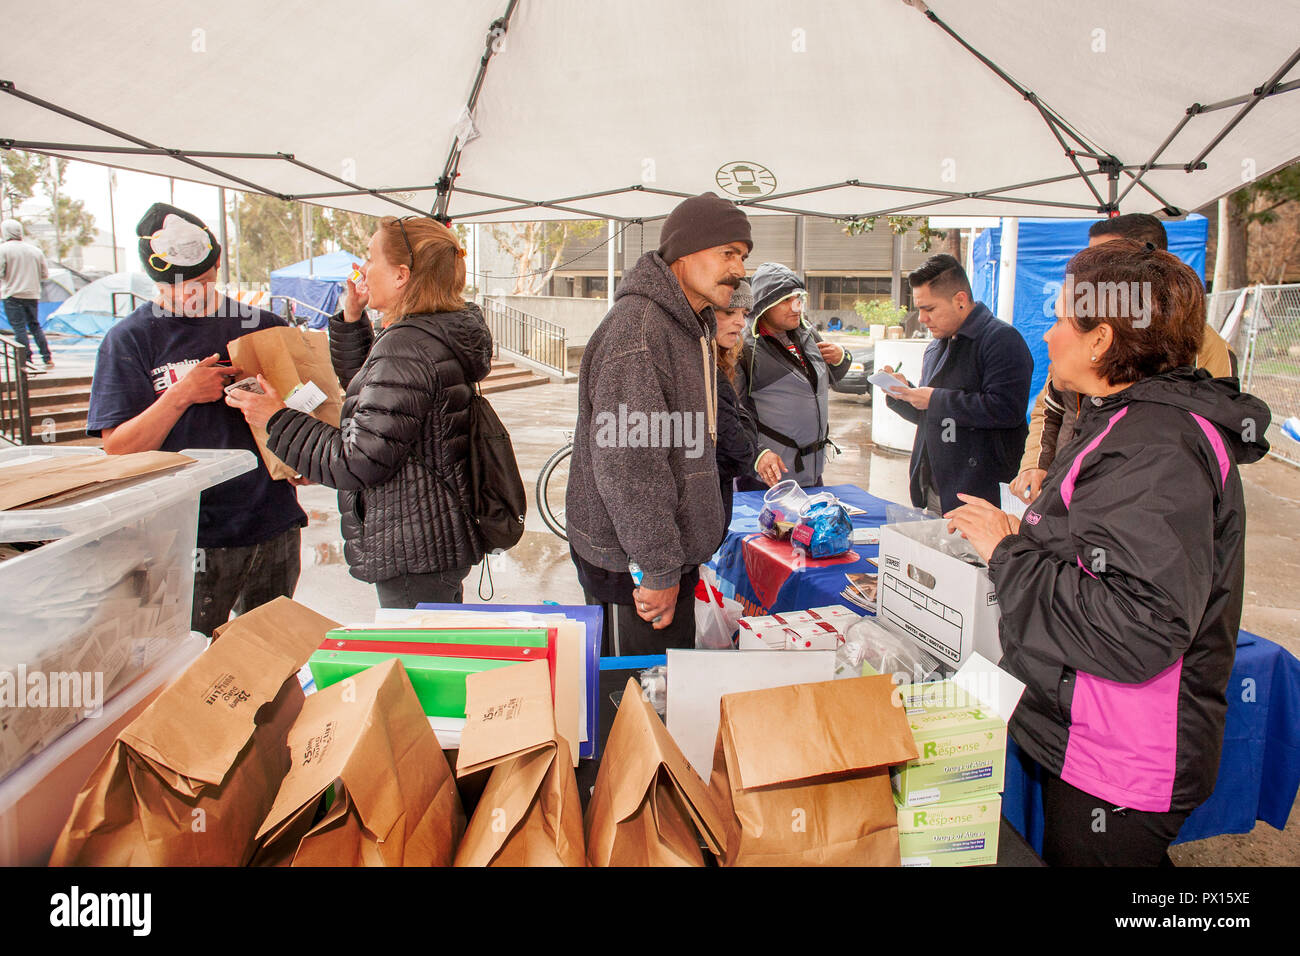 Pour lutter contre l'overdose aux opiacés, multiracial volontaires distribuent des kits d'antidote de Naloxone dans des sacs en papier à un campement de sans-abri à Santa Ana, CA. Banque D'Images